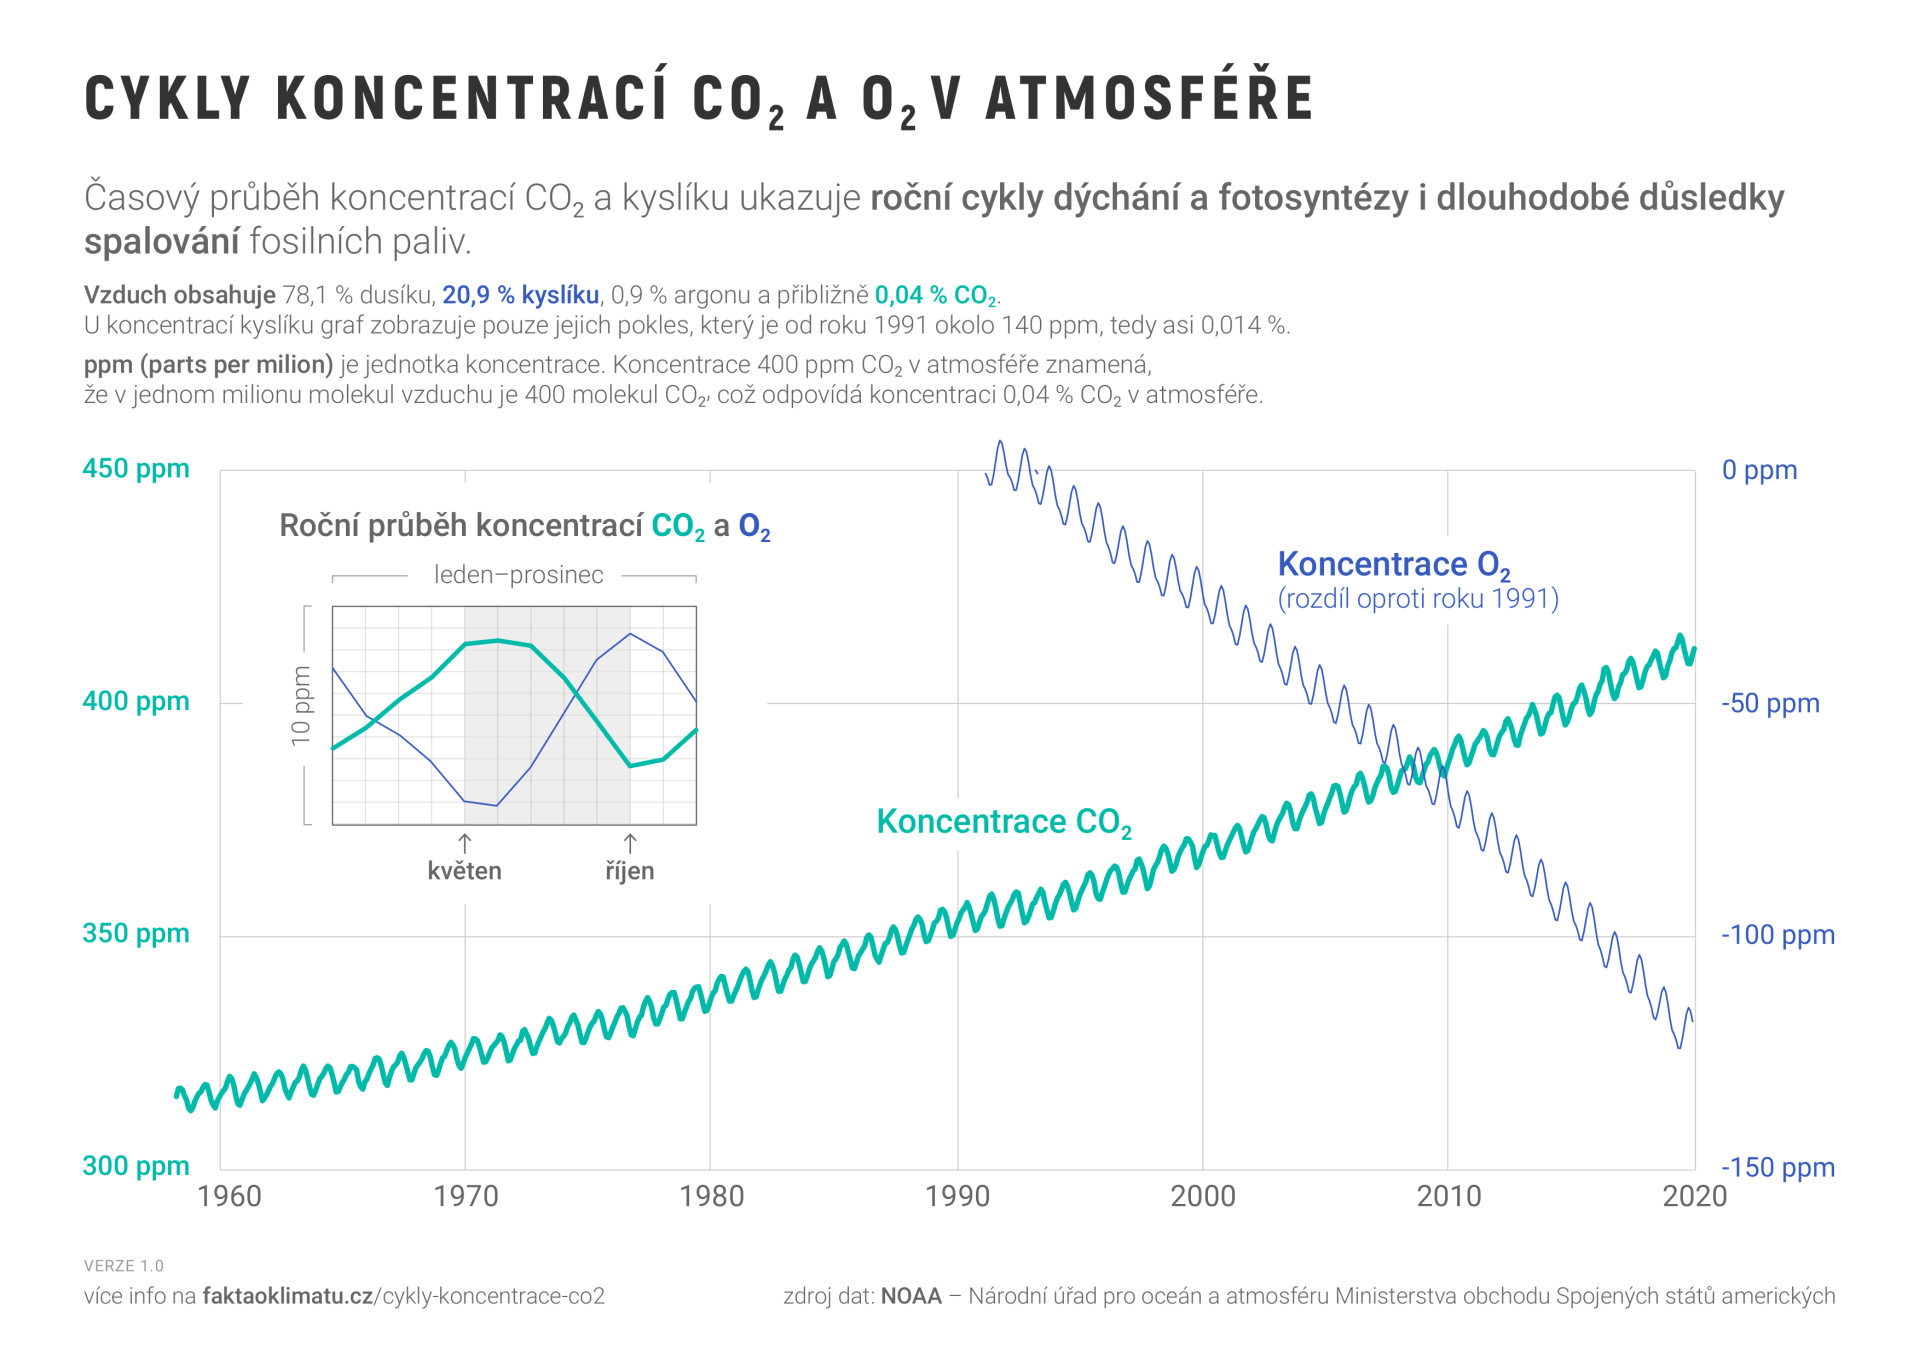 Graf č. 2 – Keelingova křivka znázorňující časový průběh koncentrací CO2 a kyslíku v zemské atmosféře. Převzato z webu projektu Fakta o klimatu, kde lze nalézt také zdrojová data a poznámky k použité metodice.